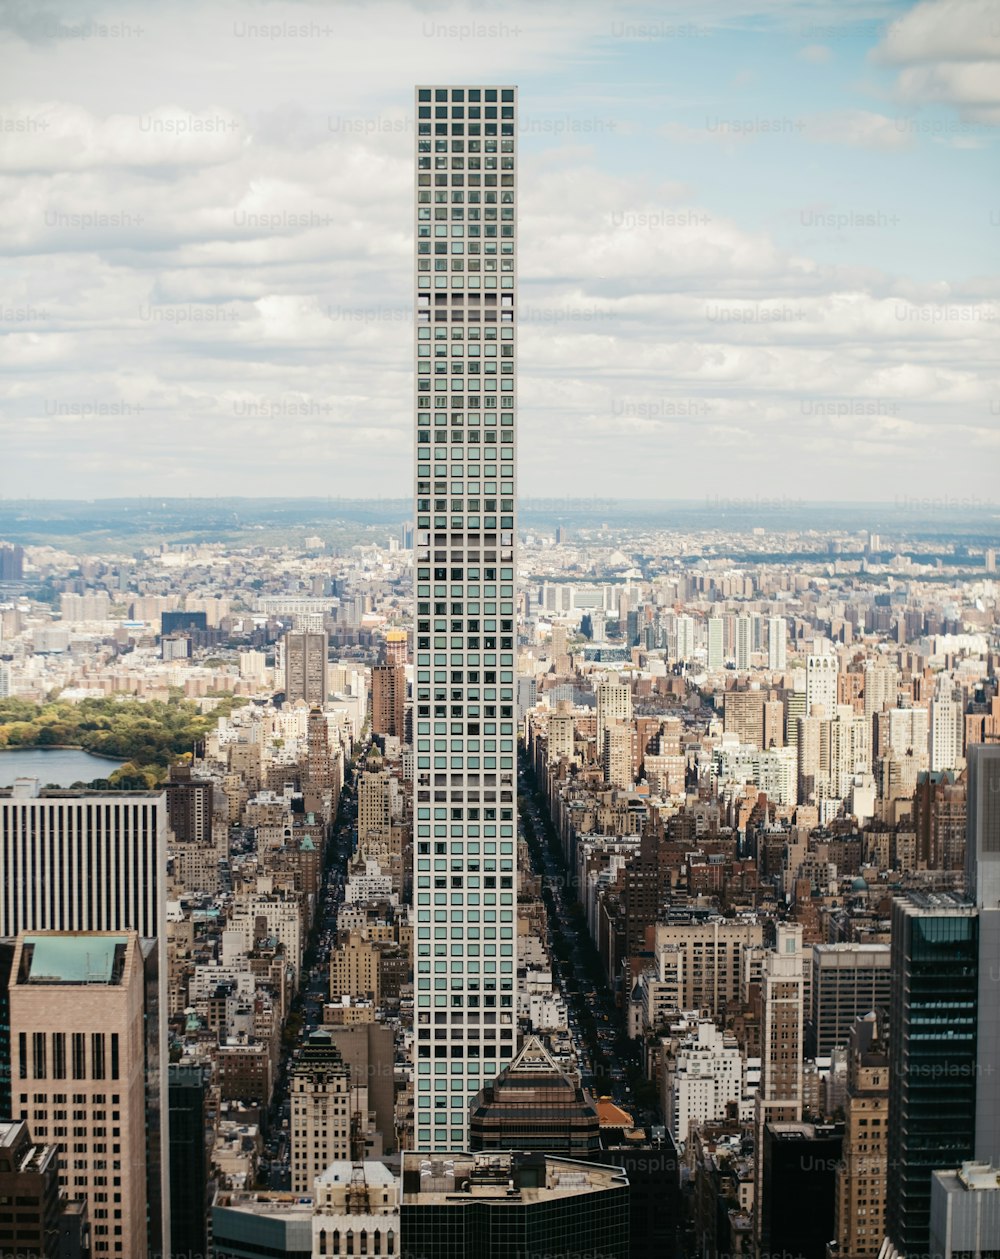 Un edificio molto alto che domina una città